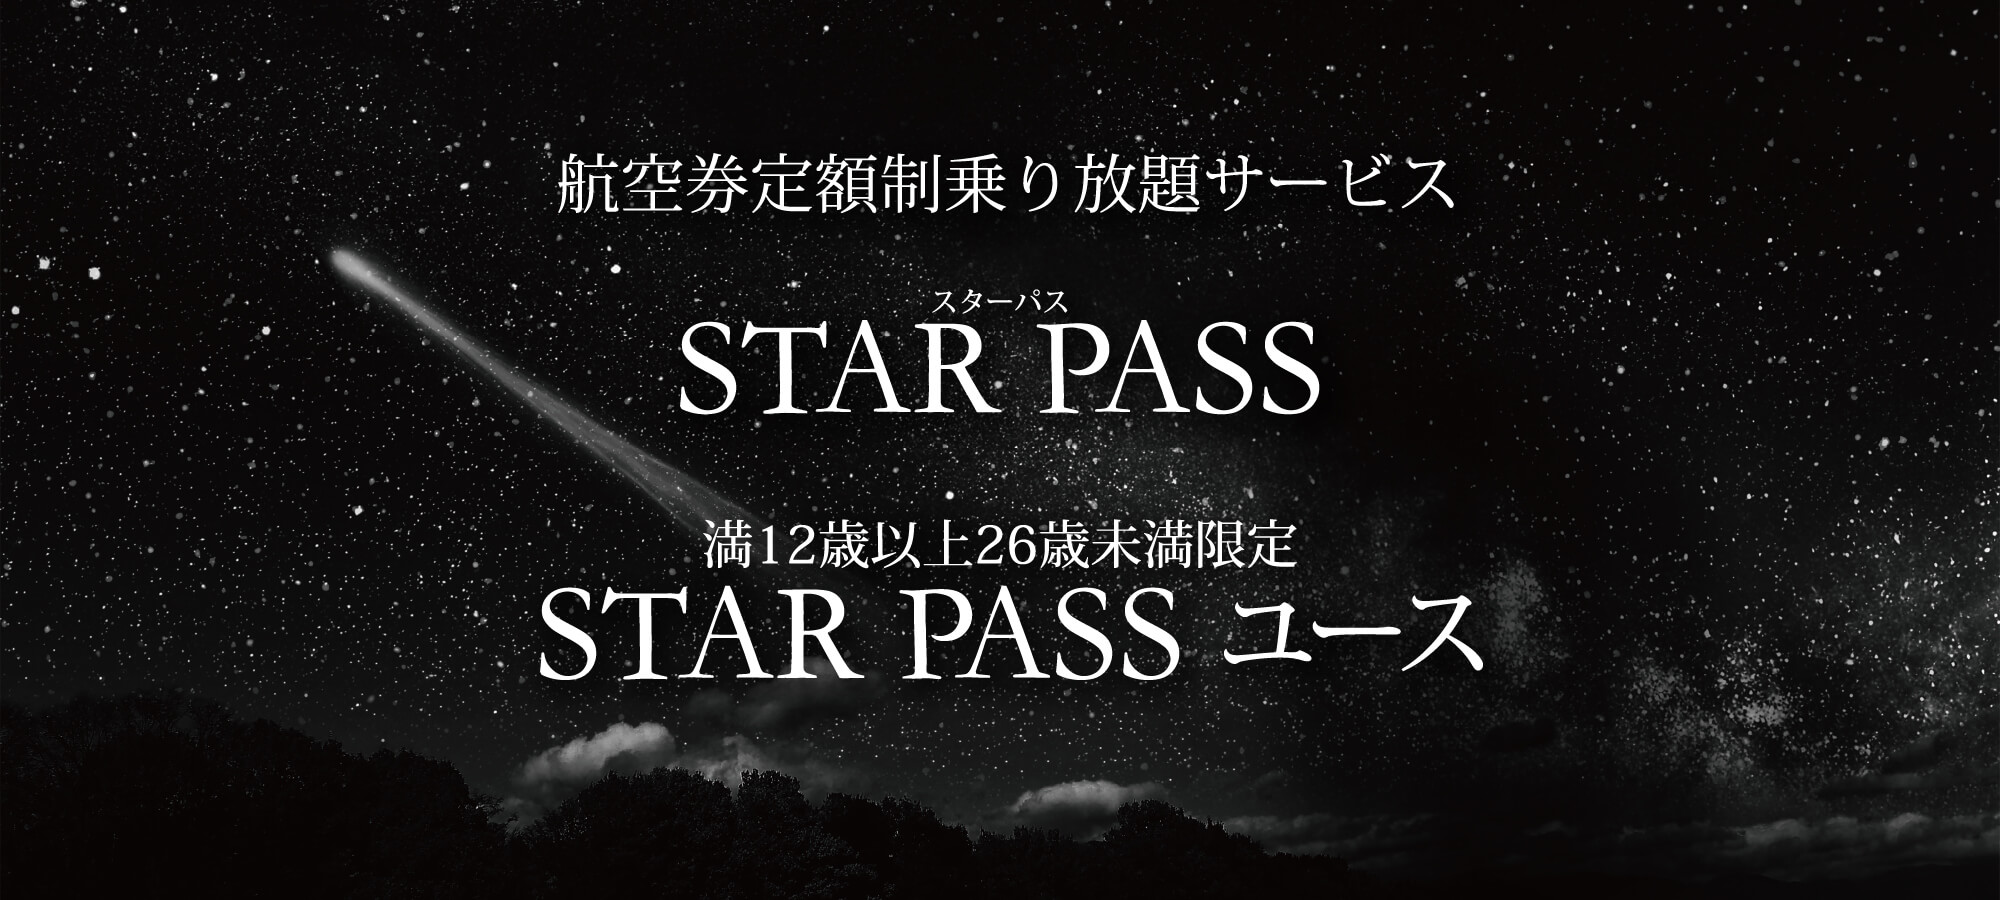 航空券定額制サービス STAR PASS, STAR PASS ユース（満12歳以上26歳未満限定）